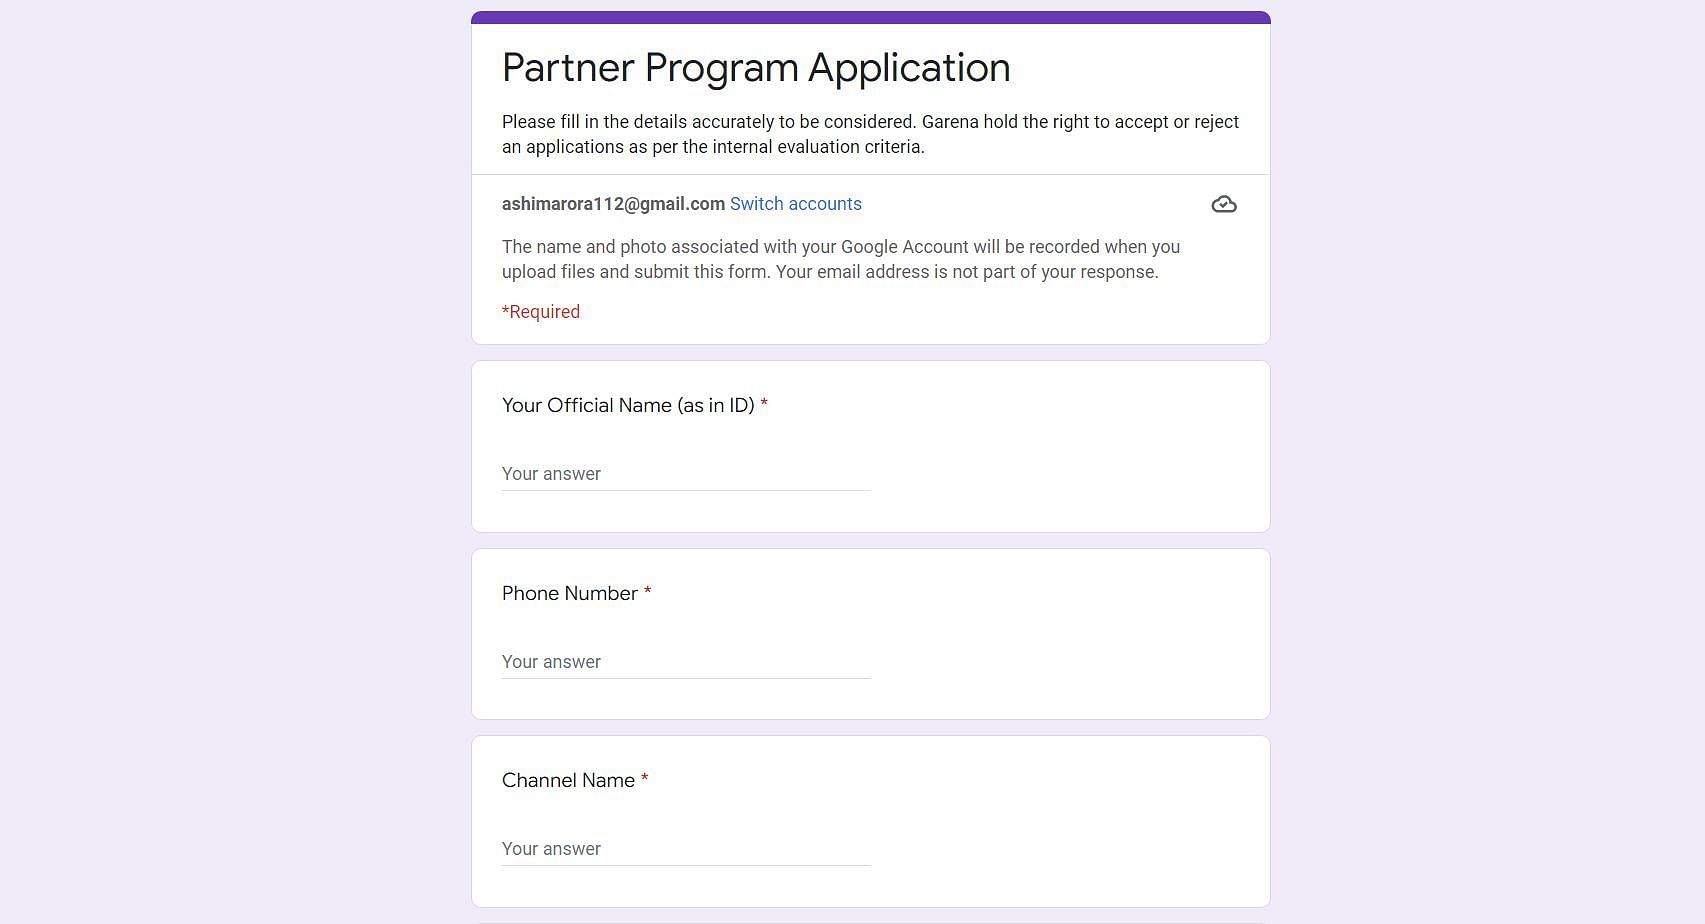 Partner Program application form for Indian server (Image via Google)